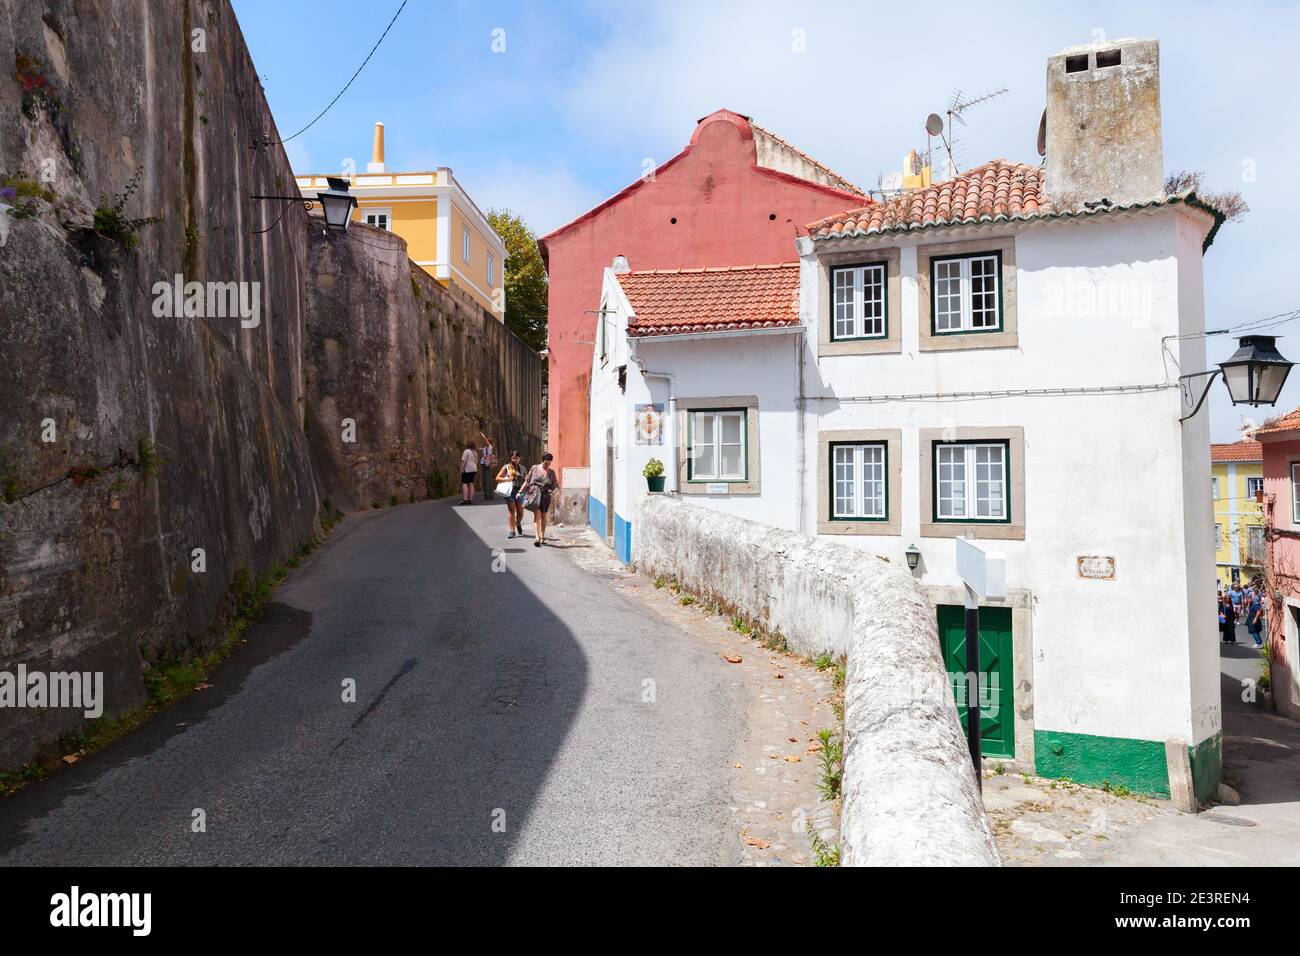 Sintra, Portogallo - 14 agosto 2017: Vista sulla strada con vecchie case viventi della città vecchia di Sintra. La gente comune cammina per la strada stretta Foto Stock